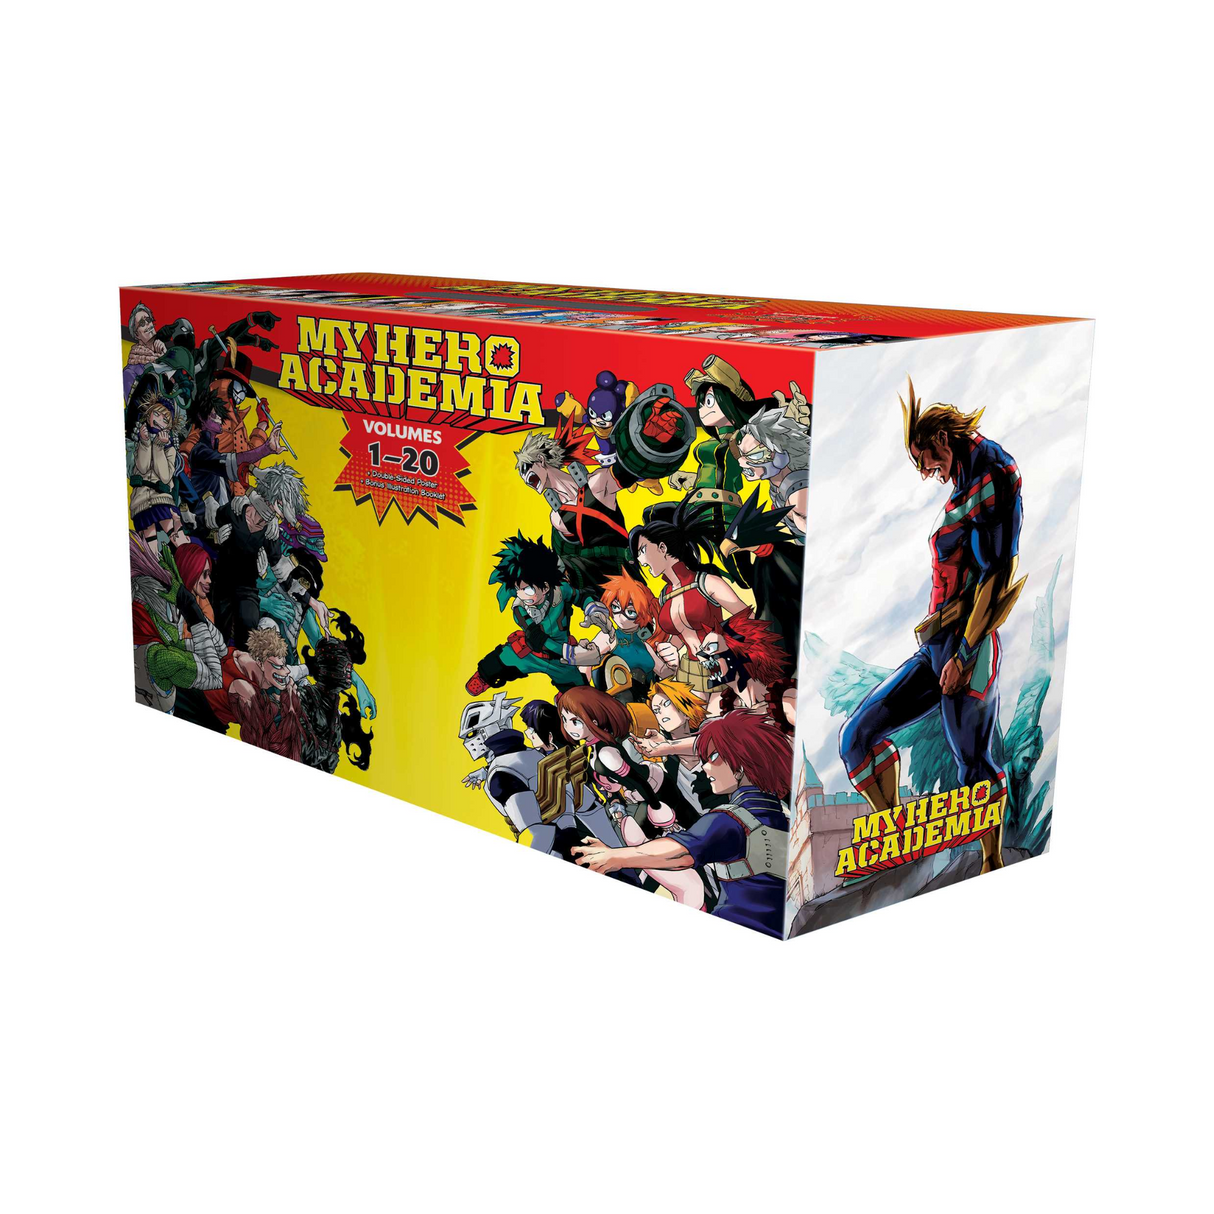 My Hero Academia Box Set 1:  Includes volumes 1-20 with premium